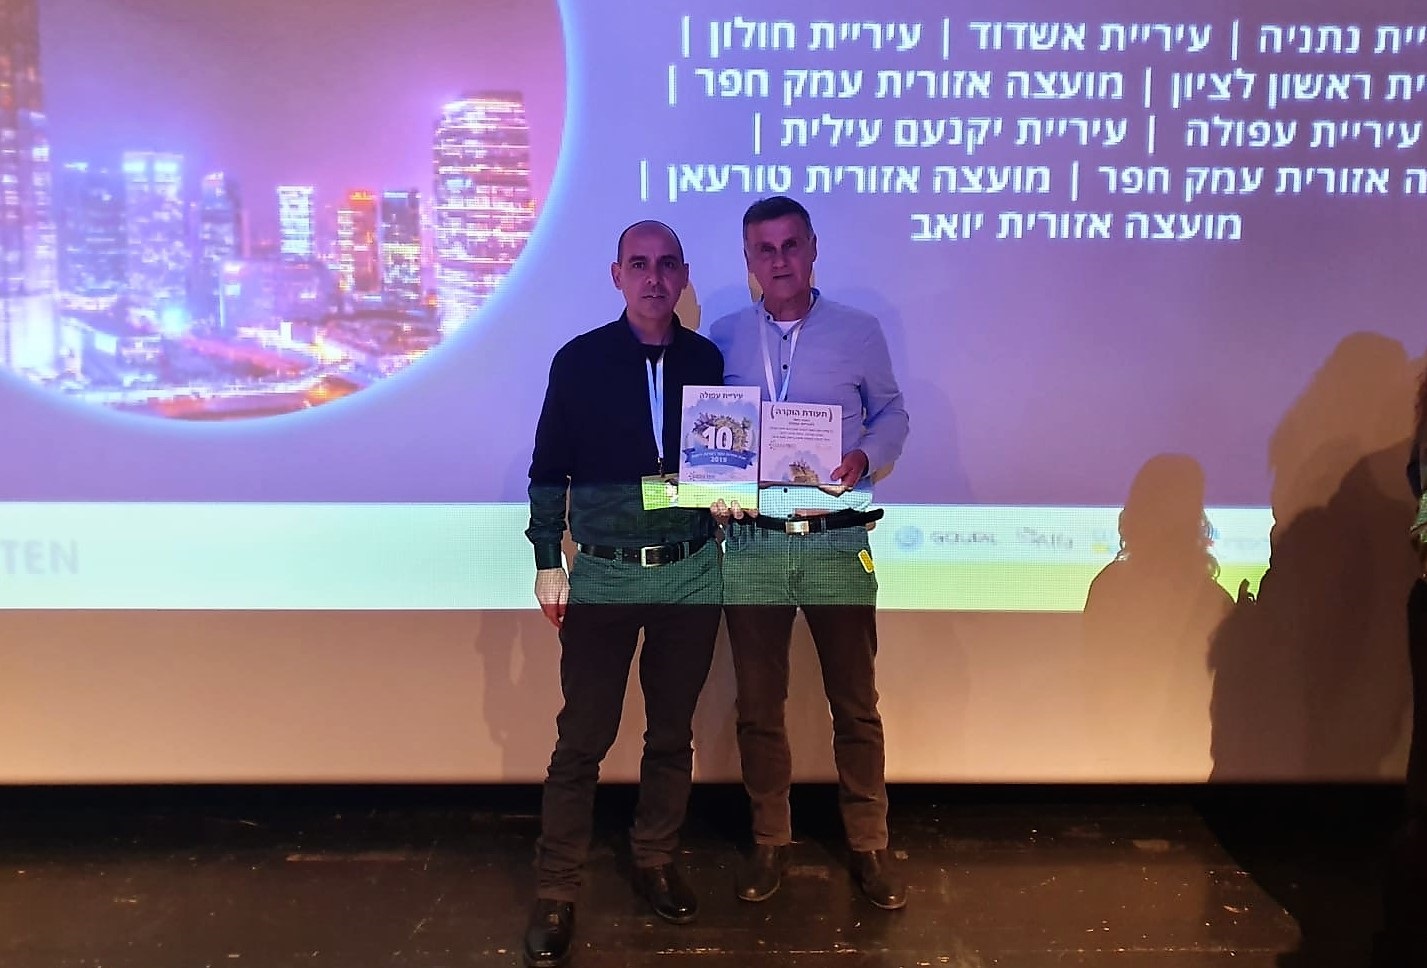 עפולה נבחרה לאחת מעשר הערים הירוקות בישראל 